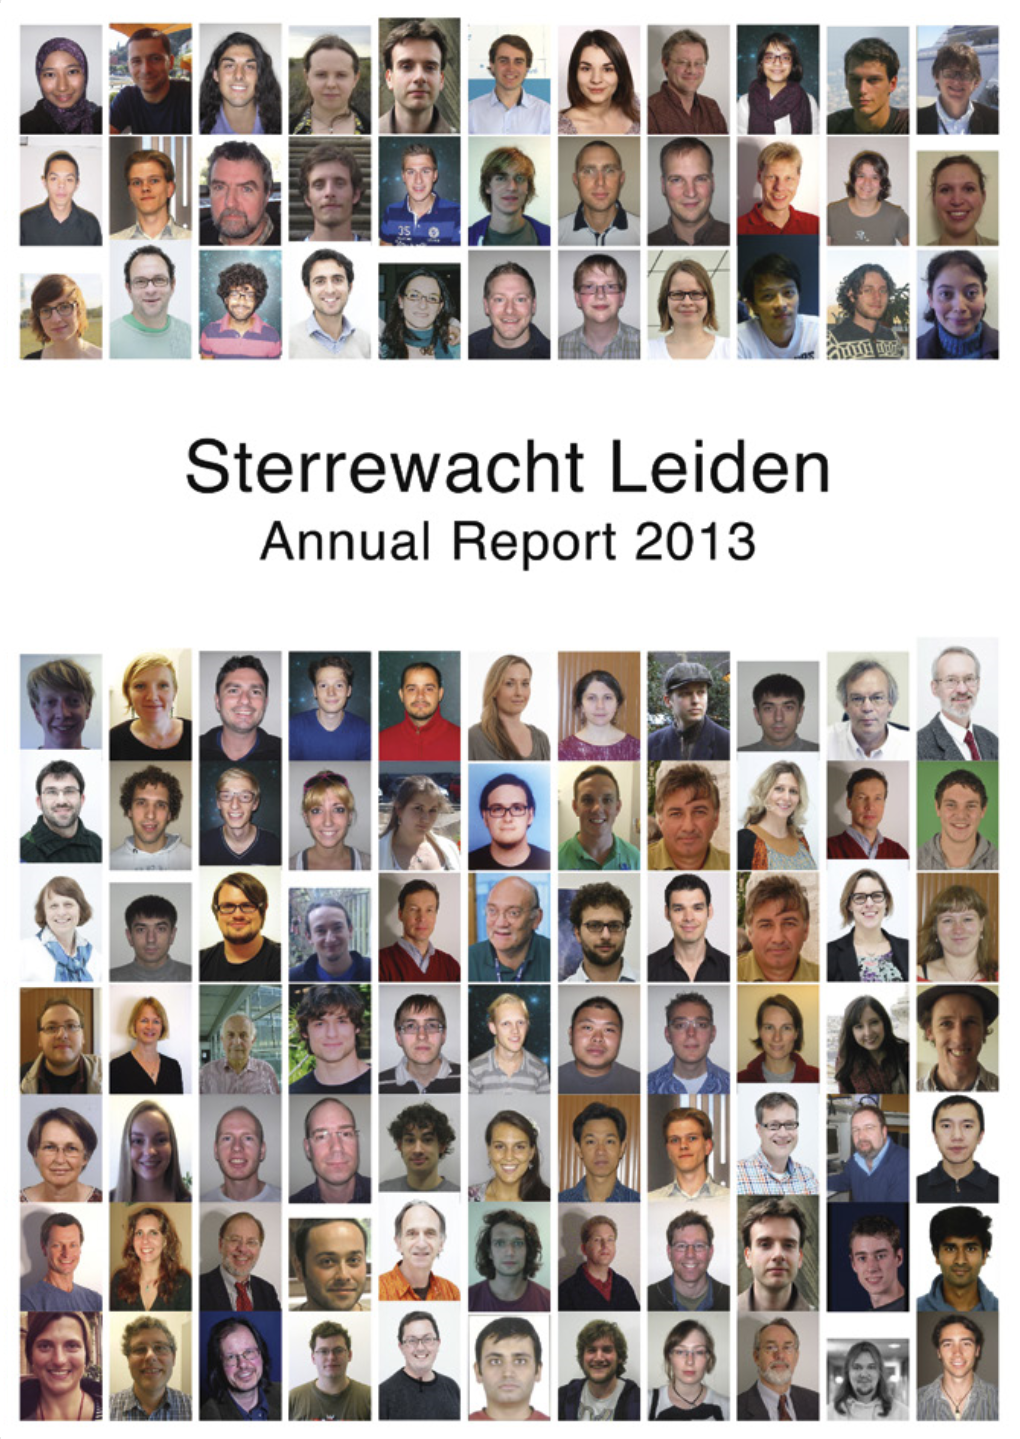 Annual Report 2013: E